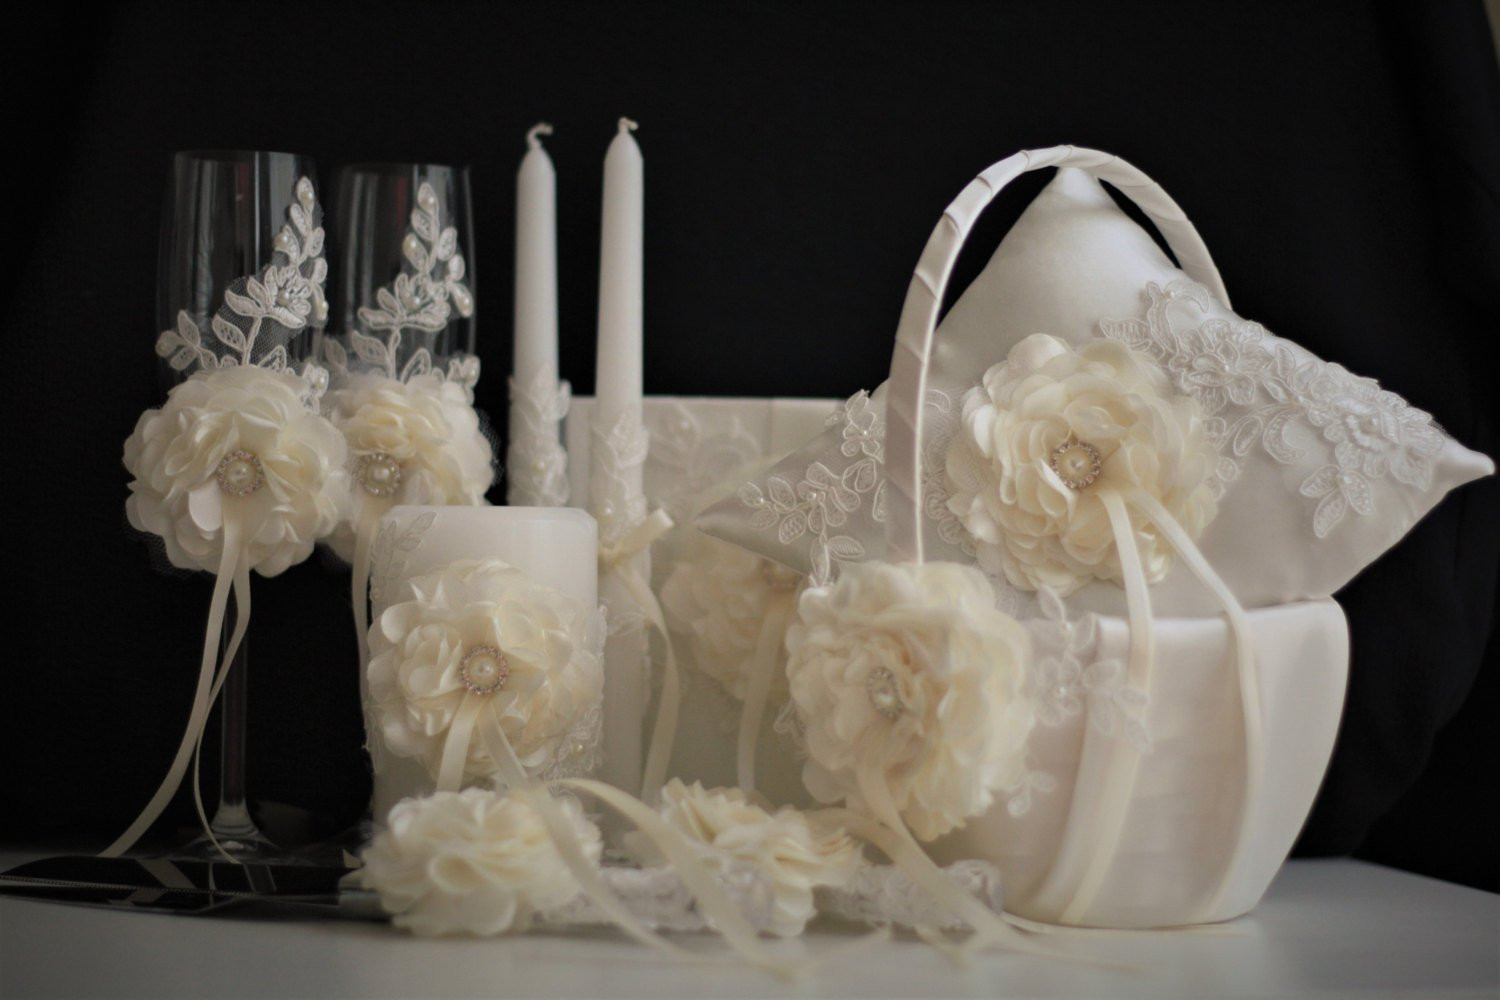 Wedding Pillow And Guest Book Sets
 Ivory Flower Girl Basket & Ring Bearer Pillow Wedding